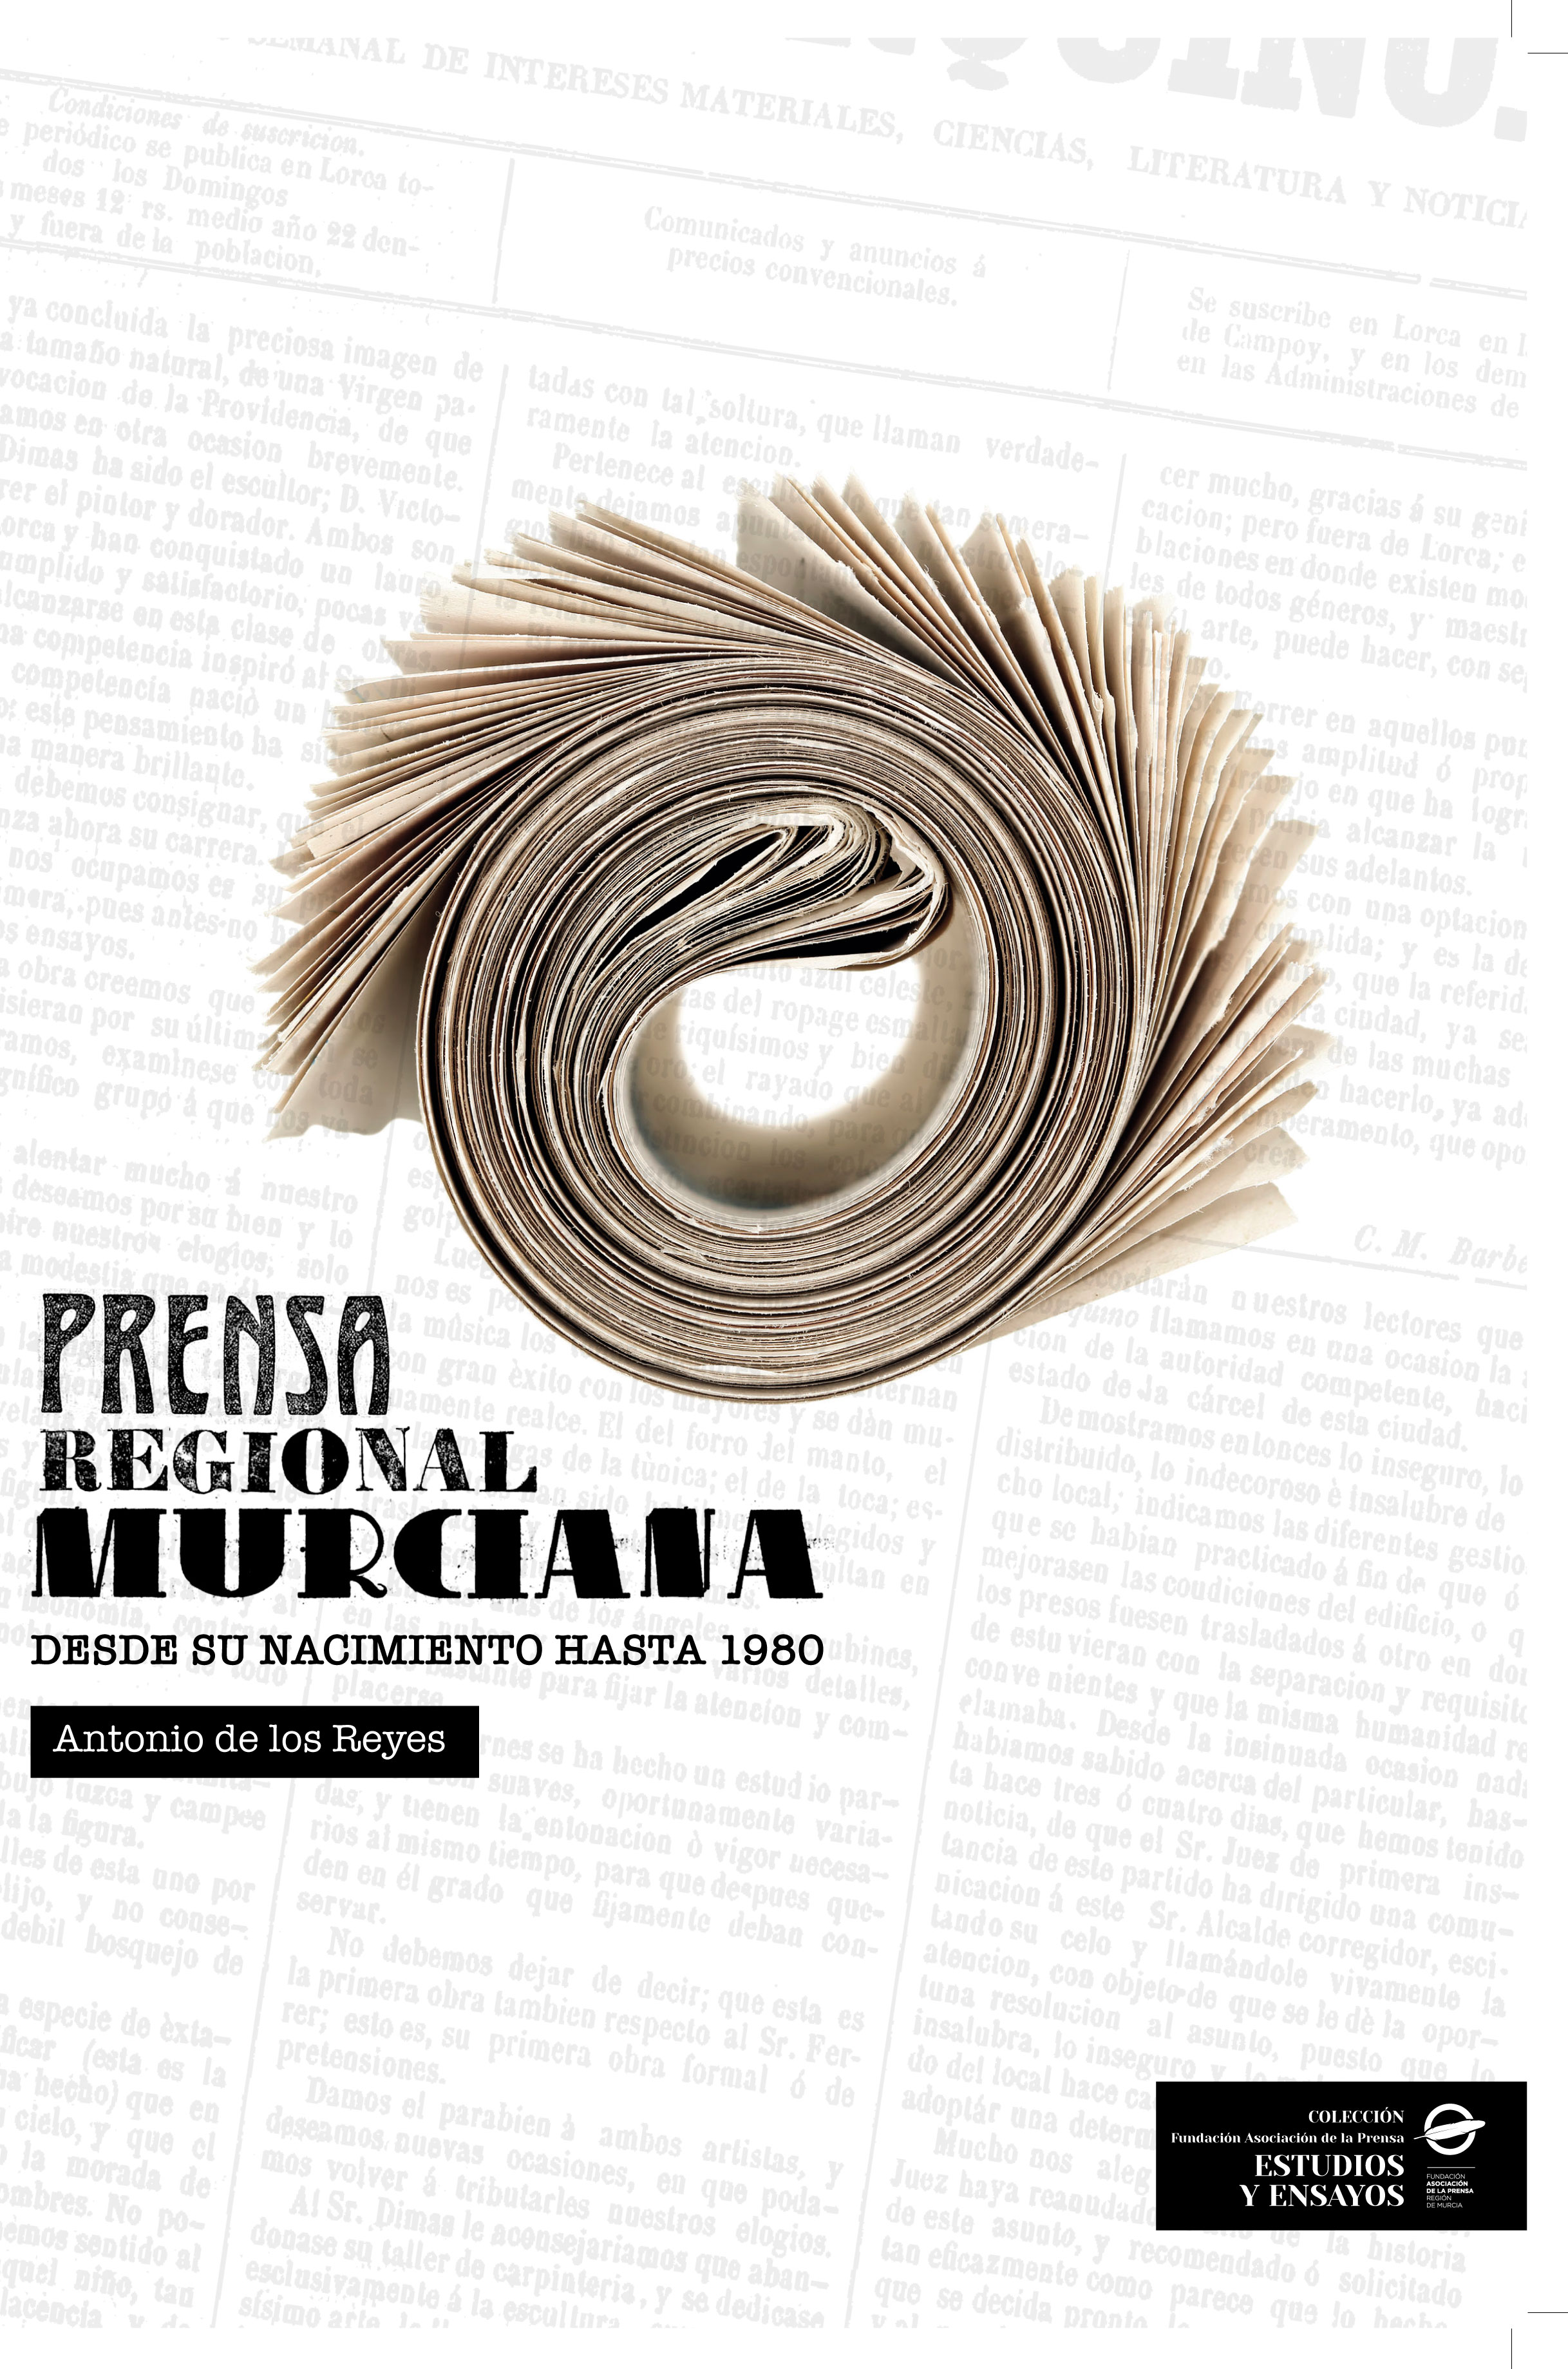 Prensa Regional Murciana desde su nacimiento hasta 1980